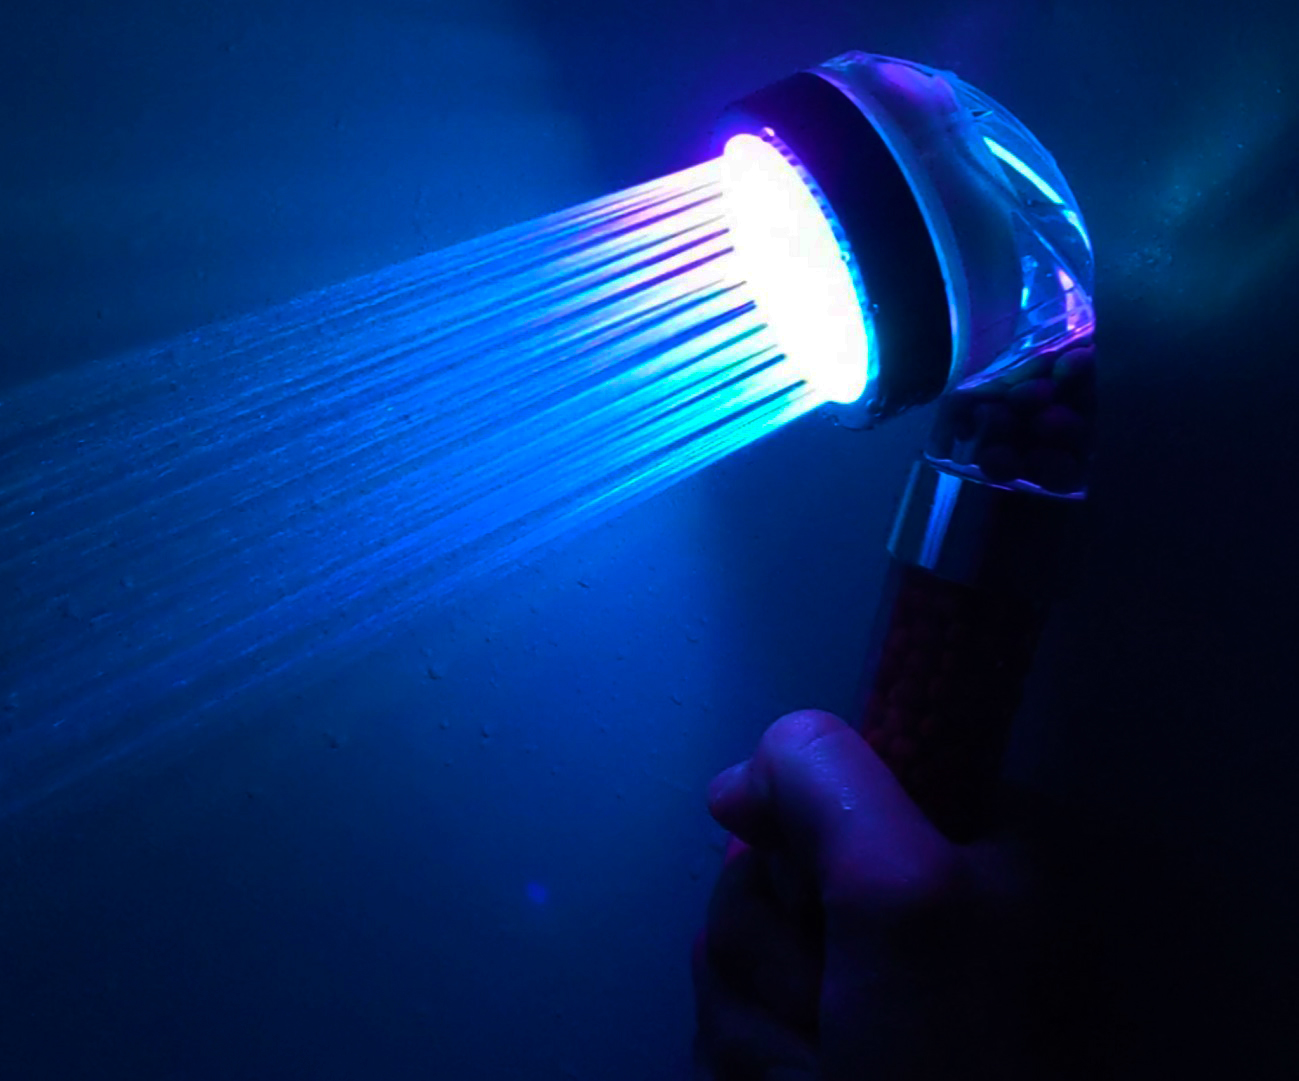 Amazonで約1400円の「7色に光るシャワーヘッド」を使ったら地味な風呂 